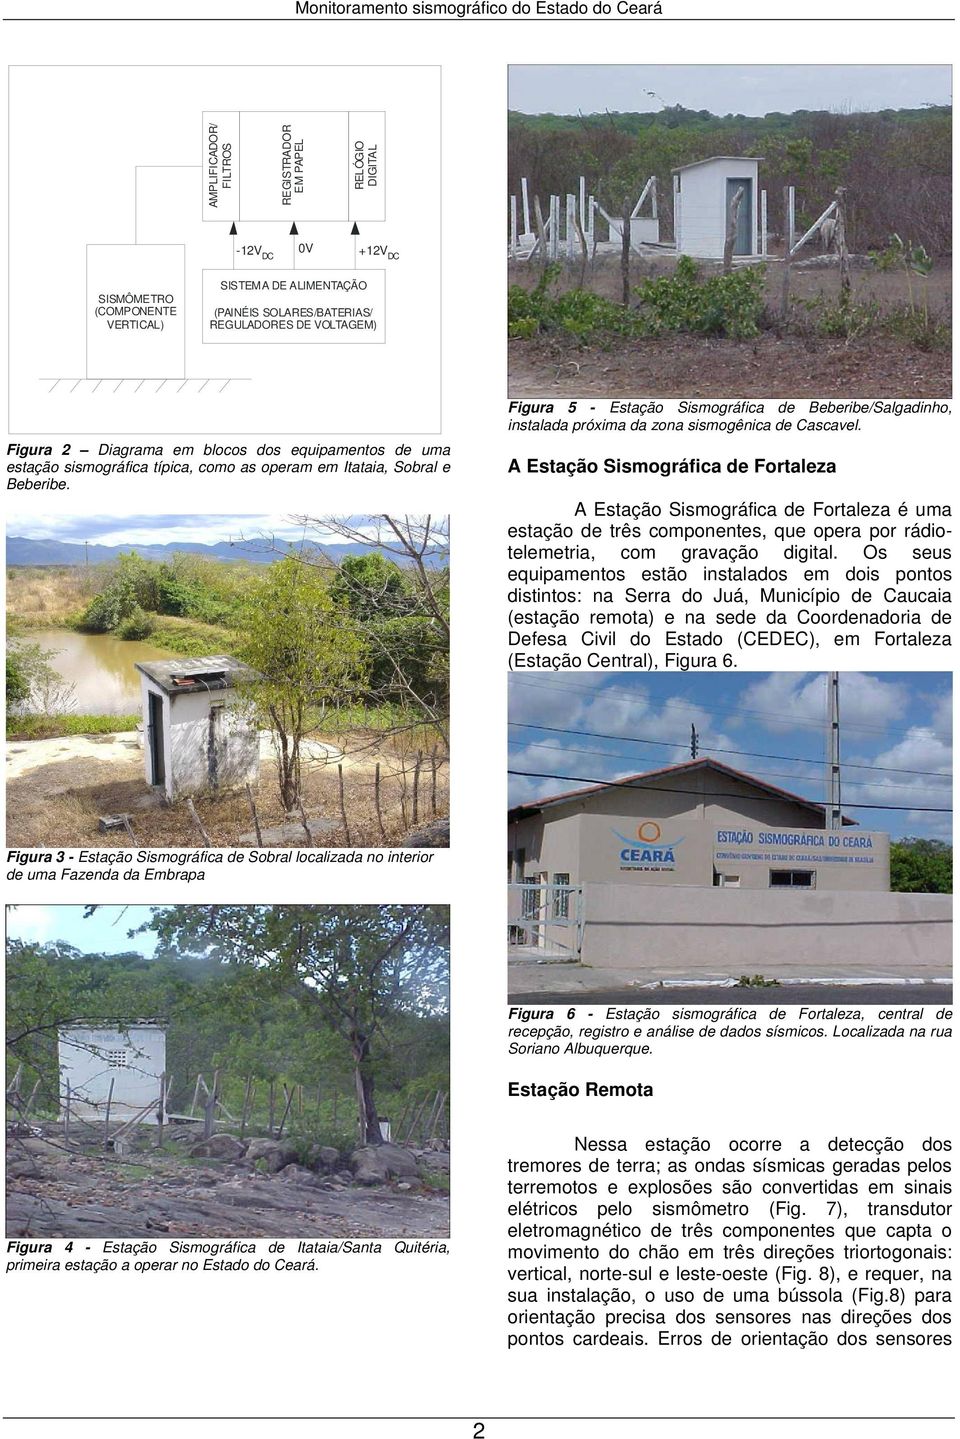 Figura 5 - Estação Sismográfica de Beberibe/Salgadinho, instalada próxima da zona sismogênica de Cascavel.